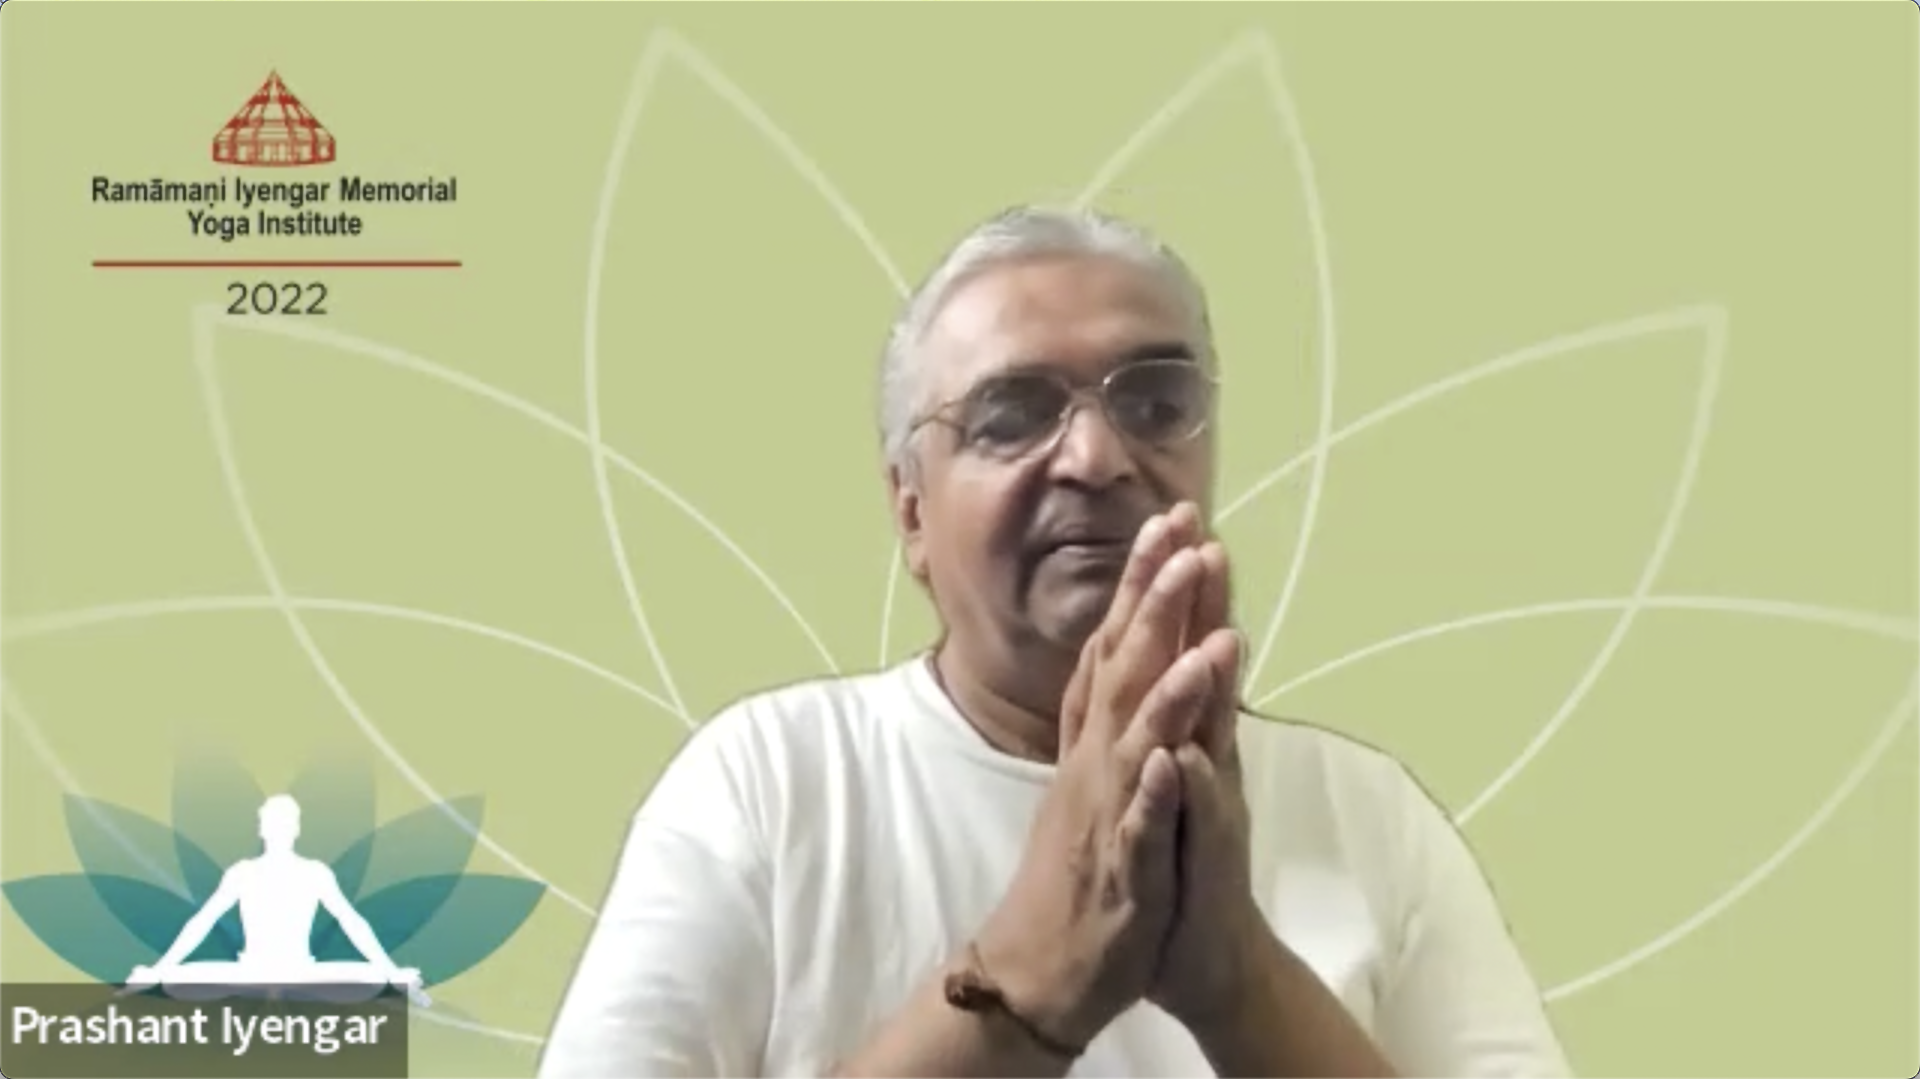 与Prashant Iyengar的互动会议关于教瑜伽的哲学